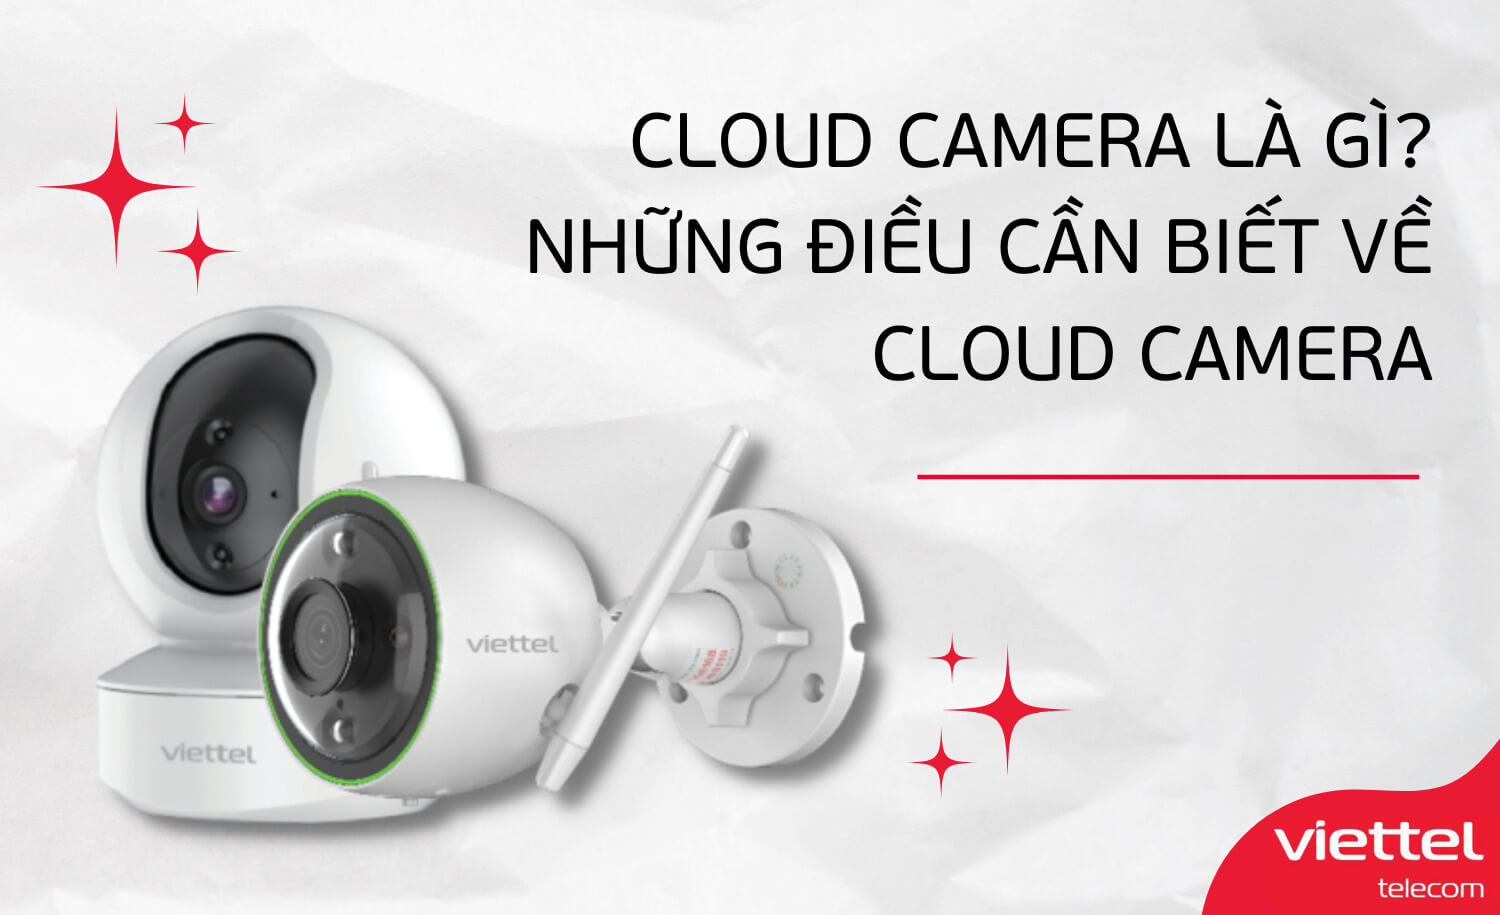 [Bảng giá] Dịch vụ lưu trữ Cloud Camera Viettel trực tuyến